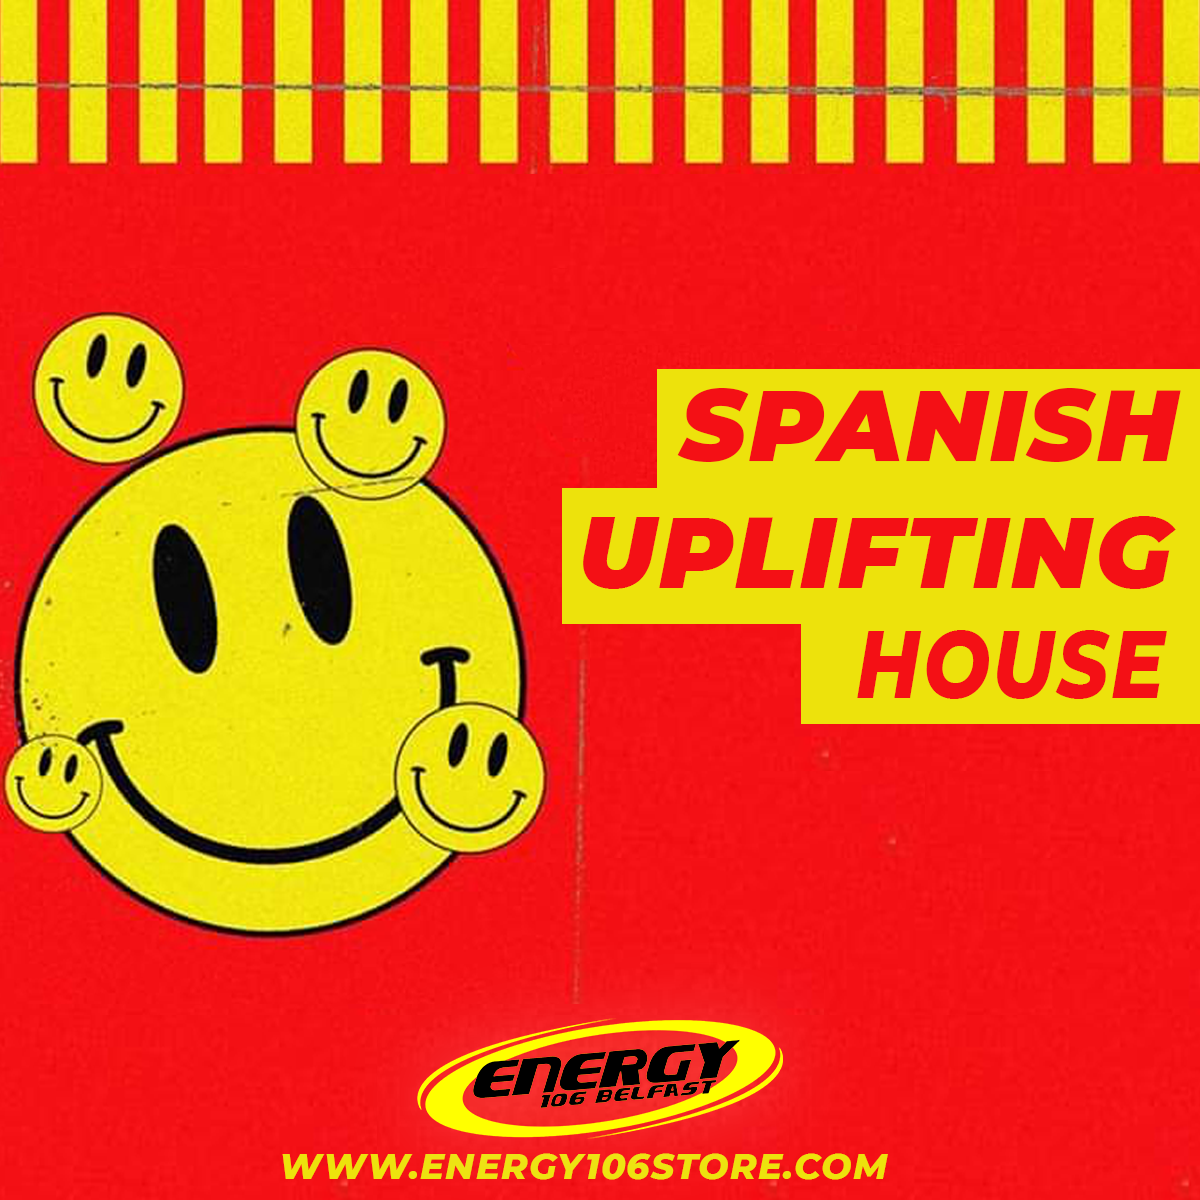 Spanish Uplifting House